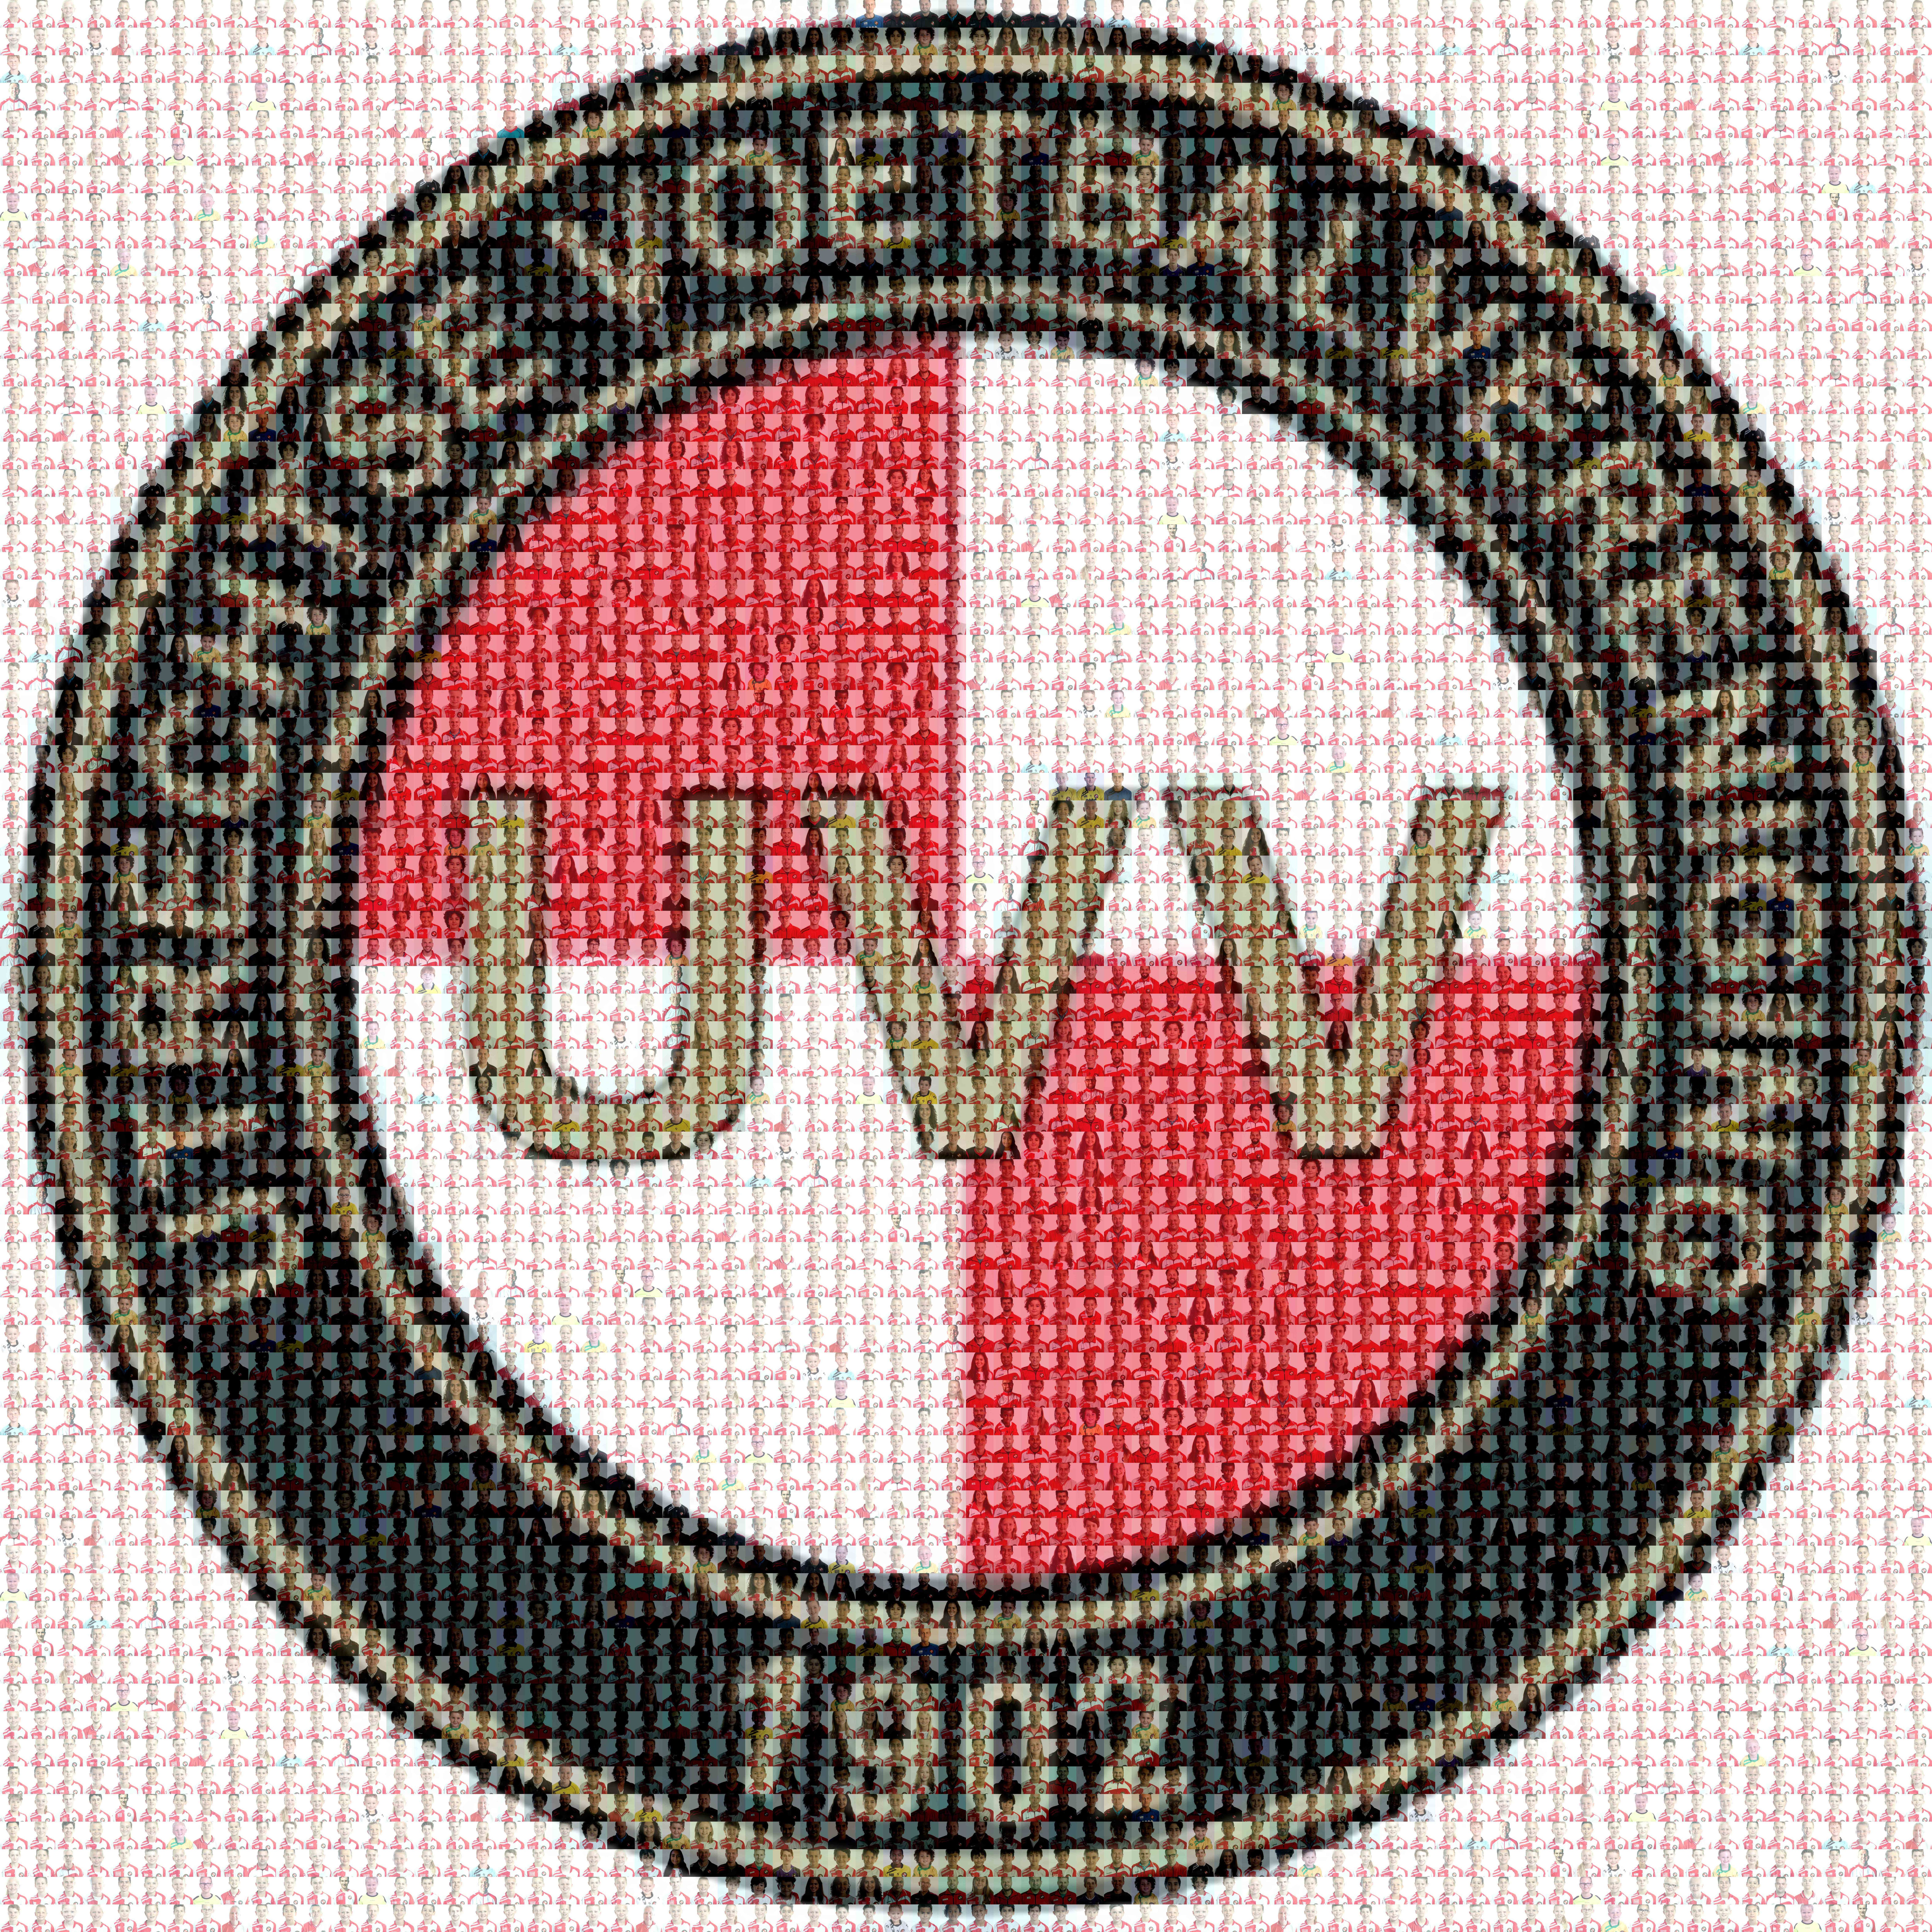 UVV voetbalplaatjes 2019-2020 fotomozaïek van alle leden